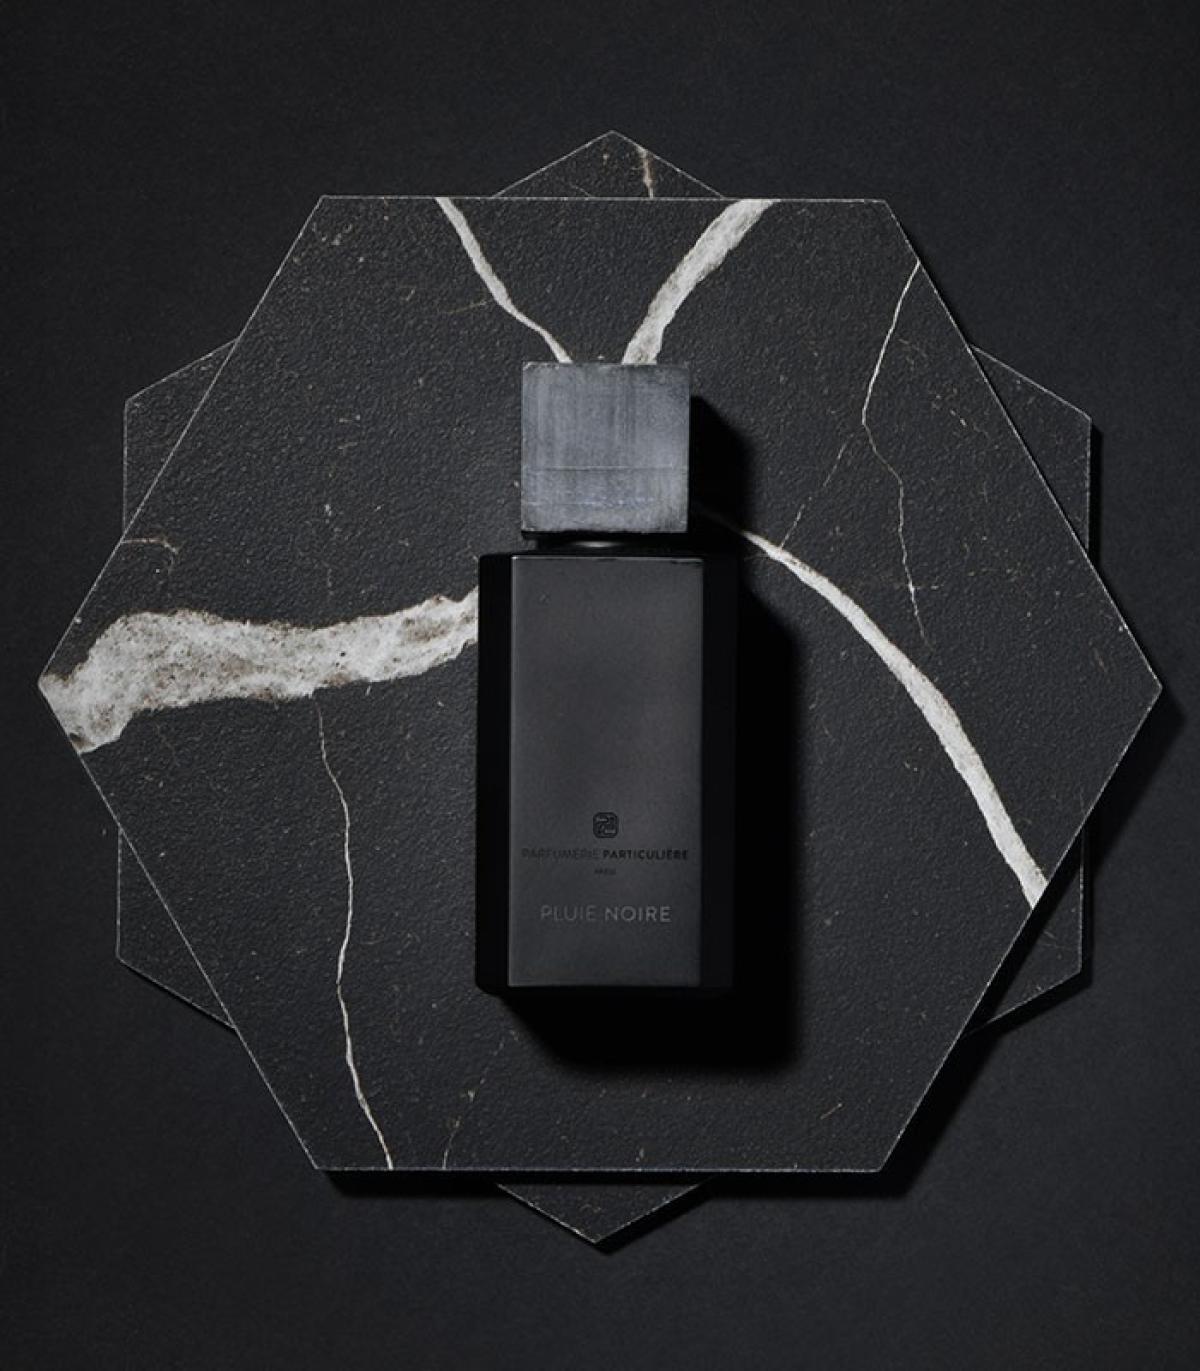 Pluie Noire Parfumerie Particulière perfume - a fragrance for women and ...